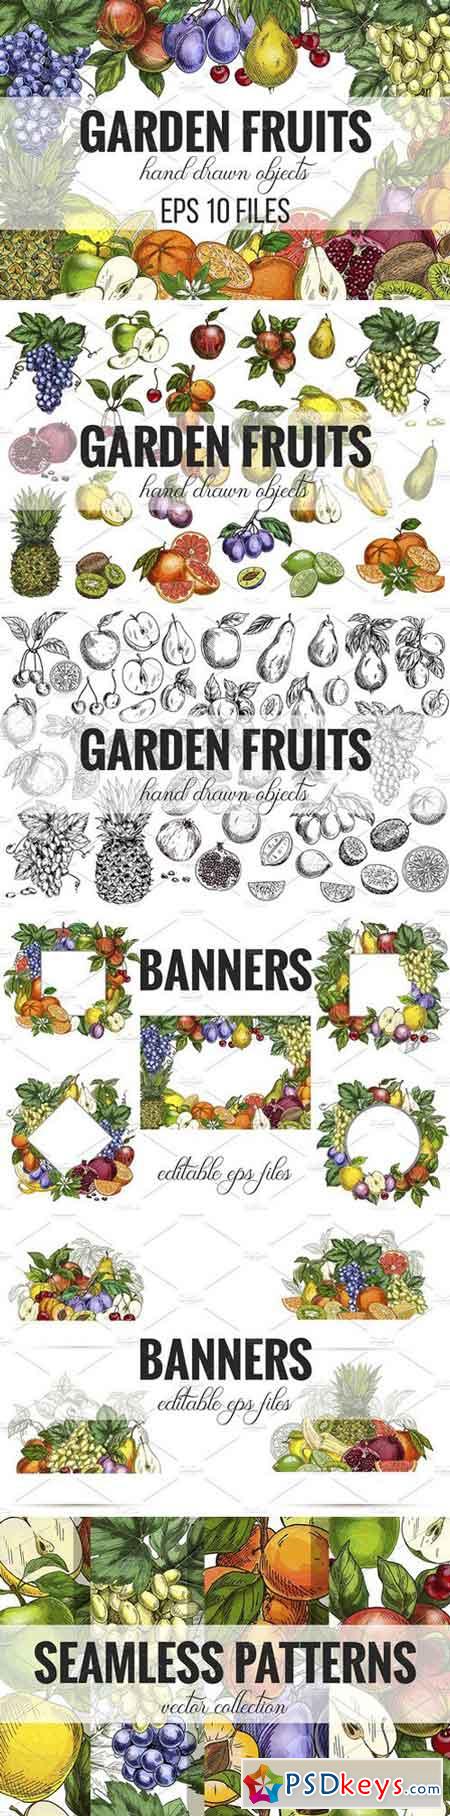 Garden Fruits, vector collection 2404657